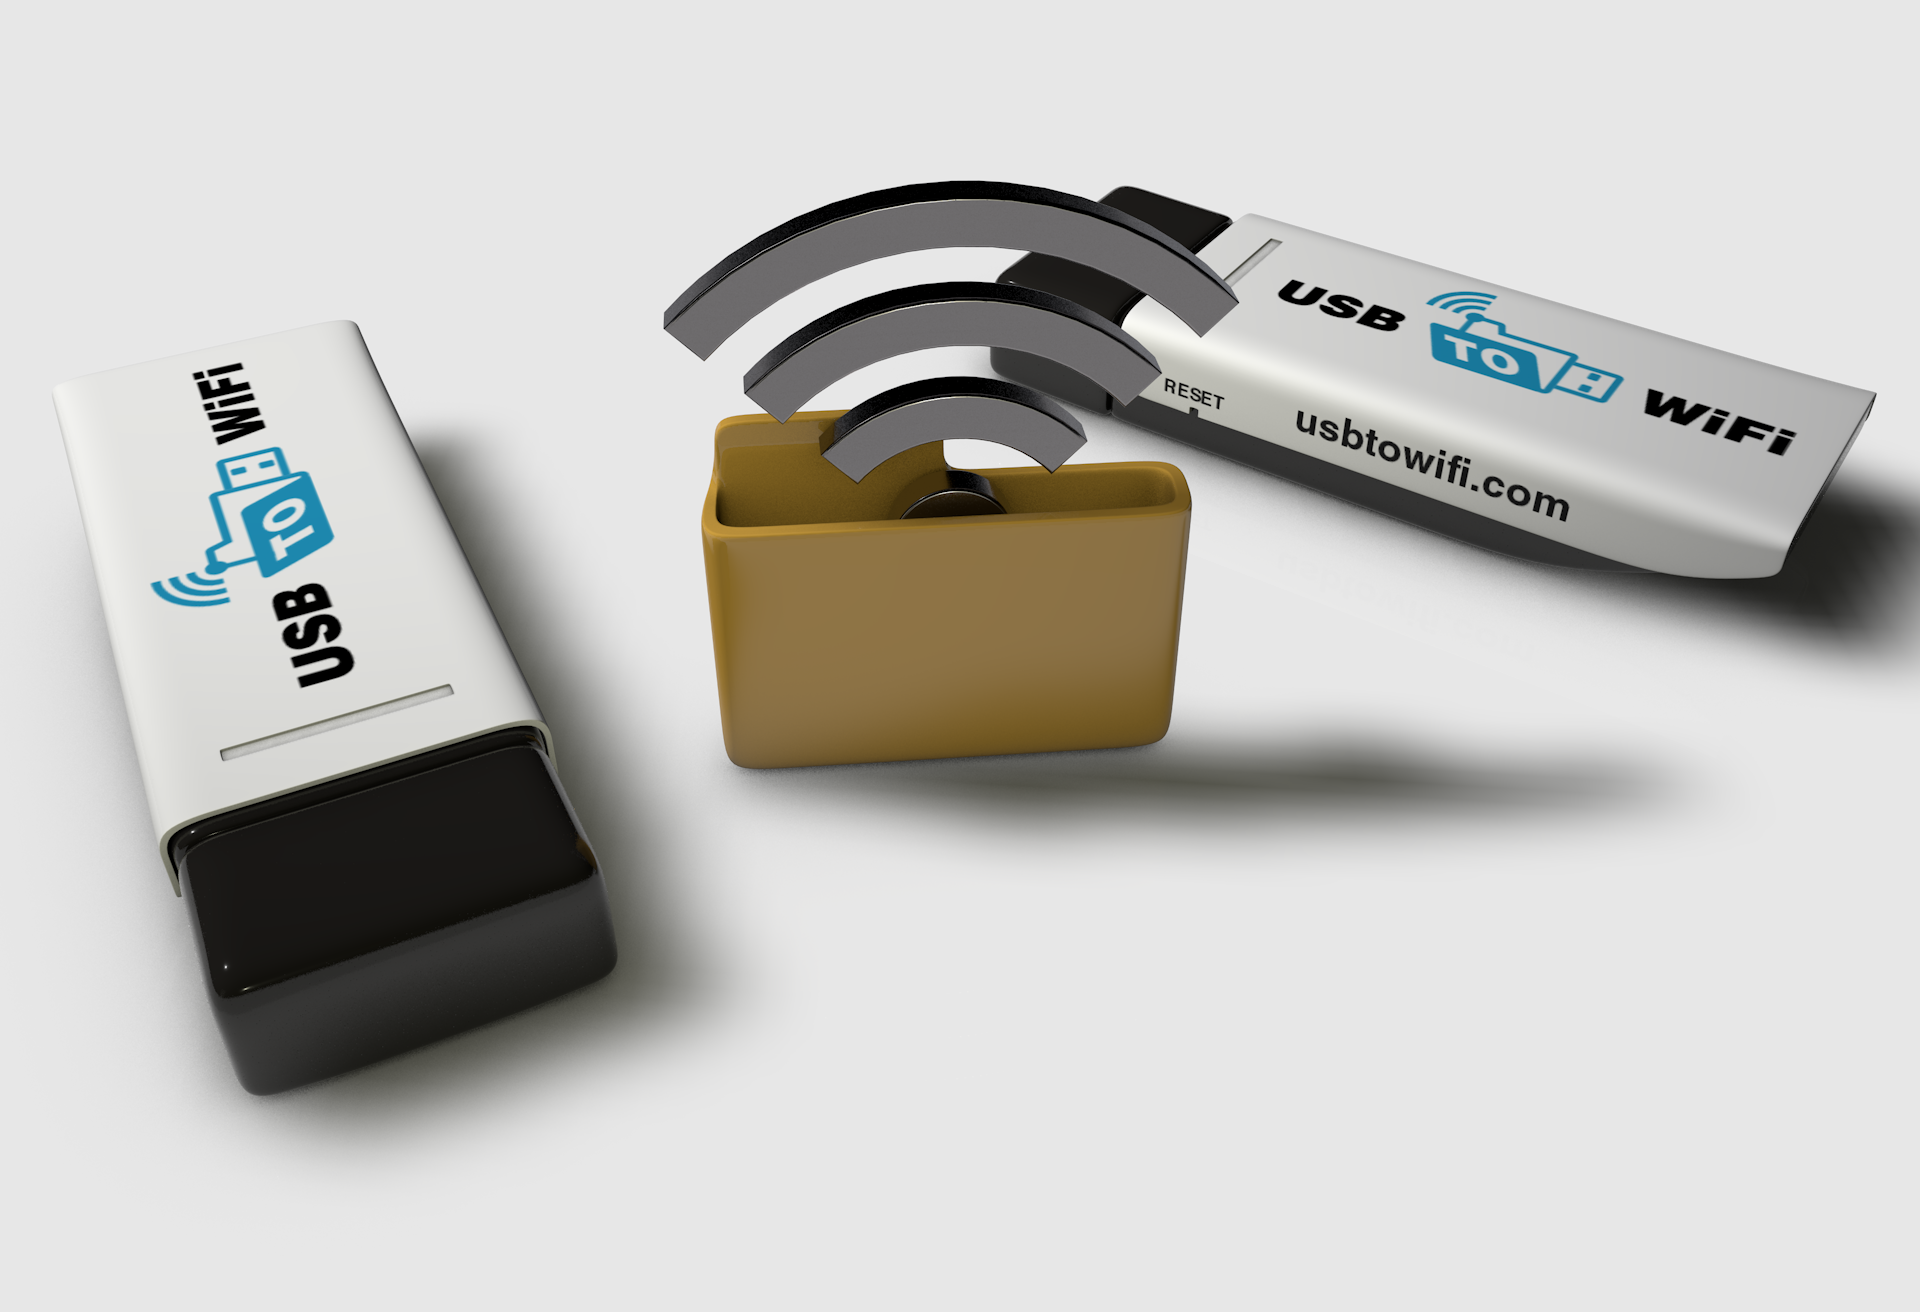 Wireless USB Data Stick - USB to WiFi